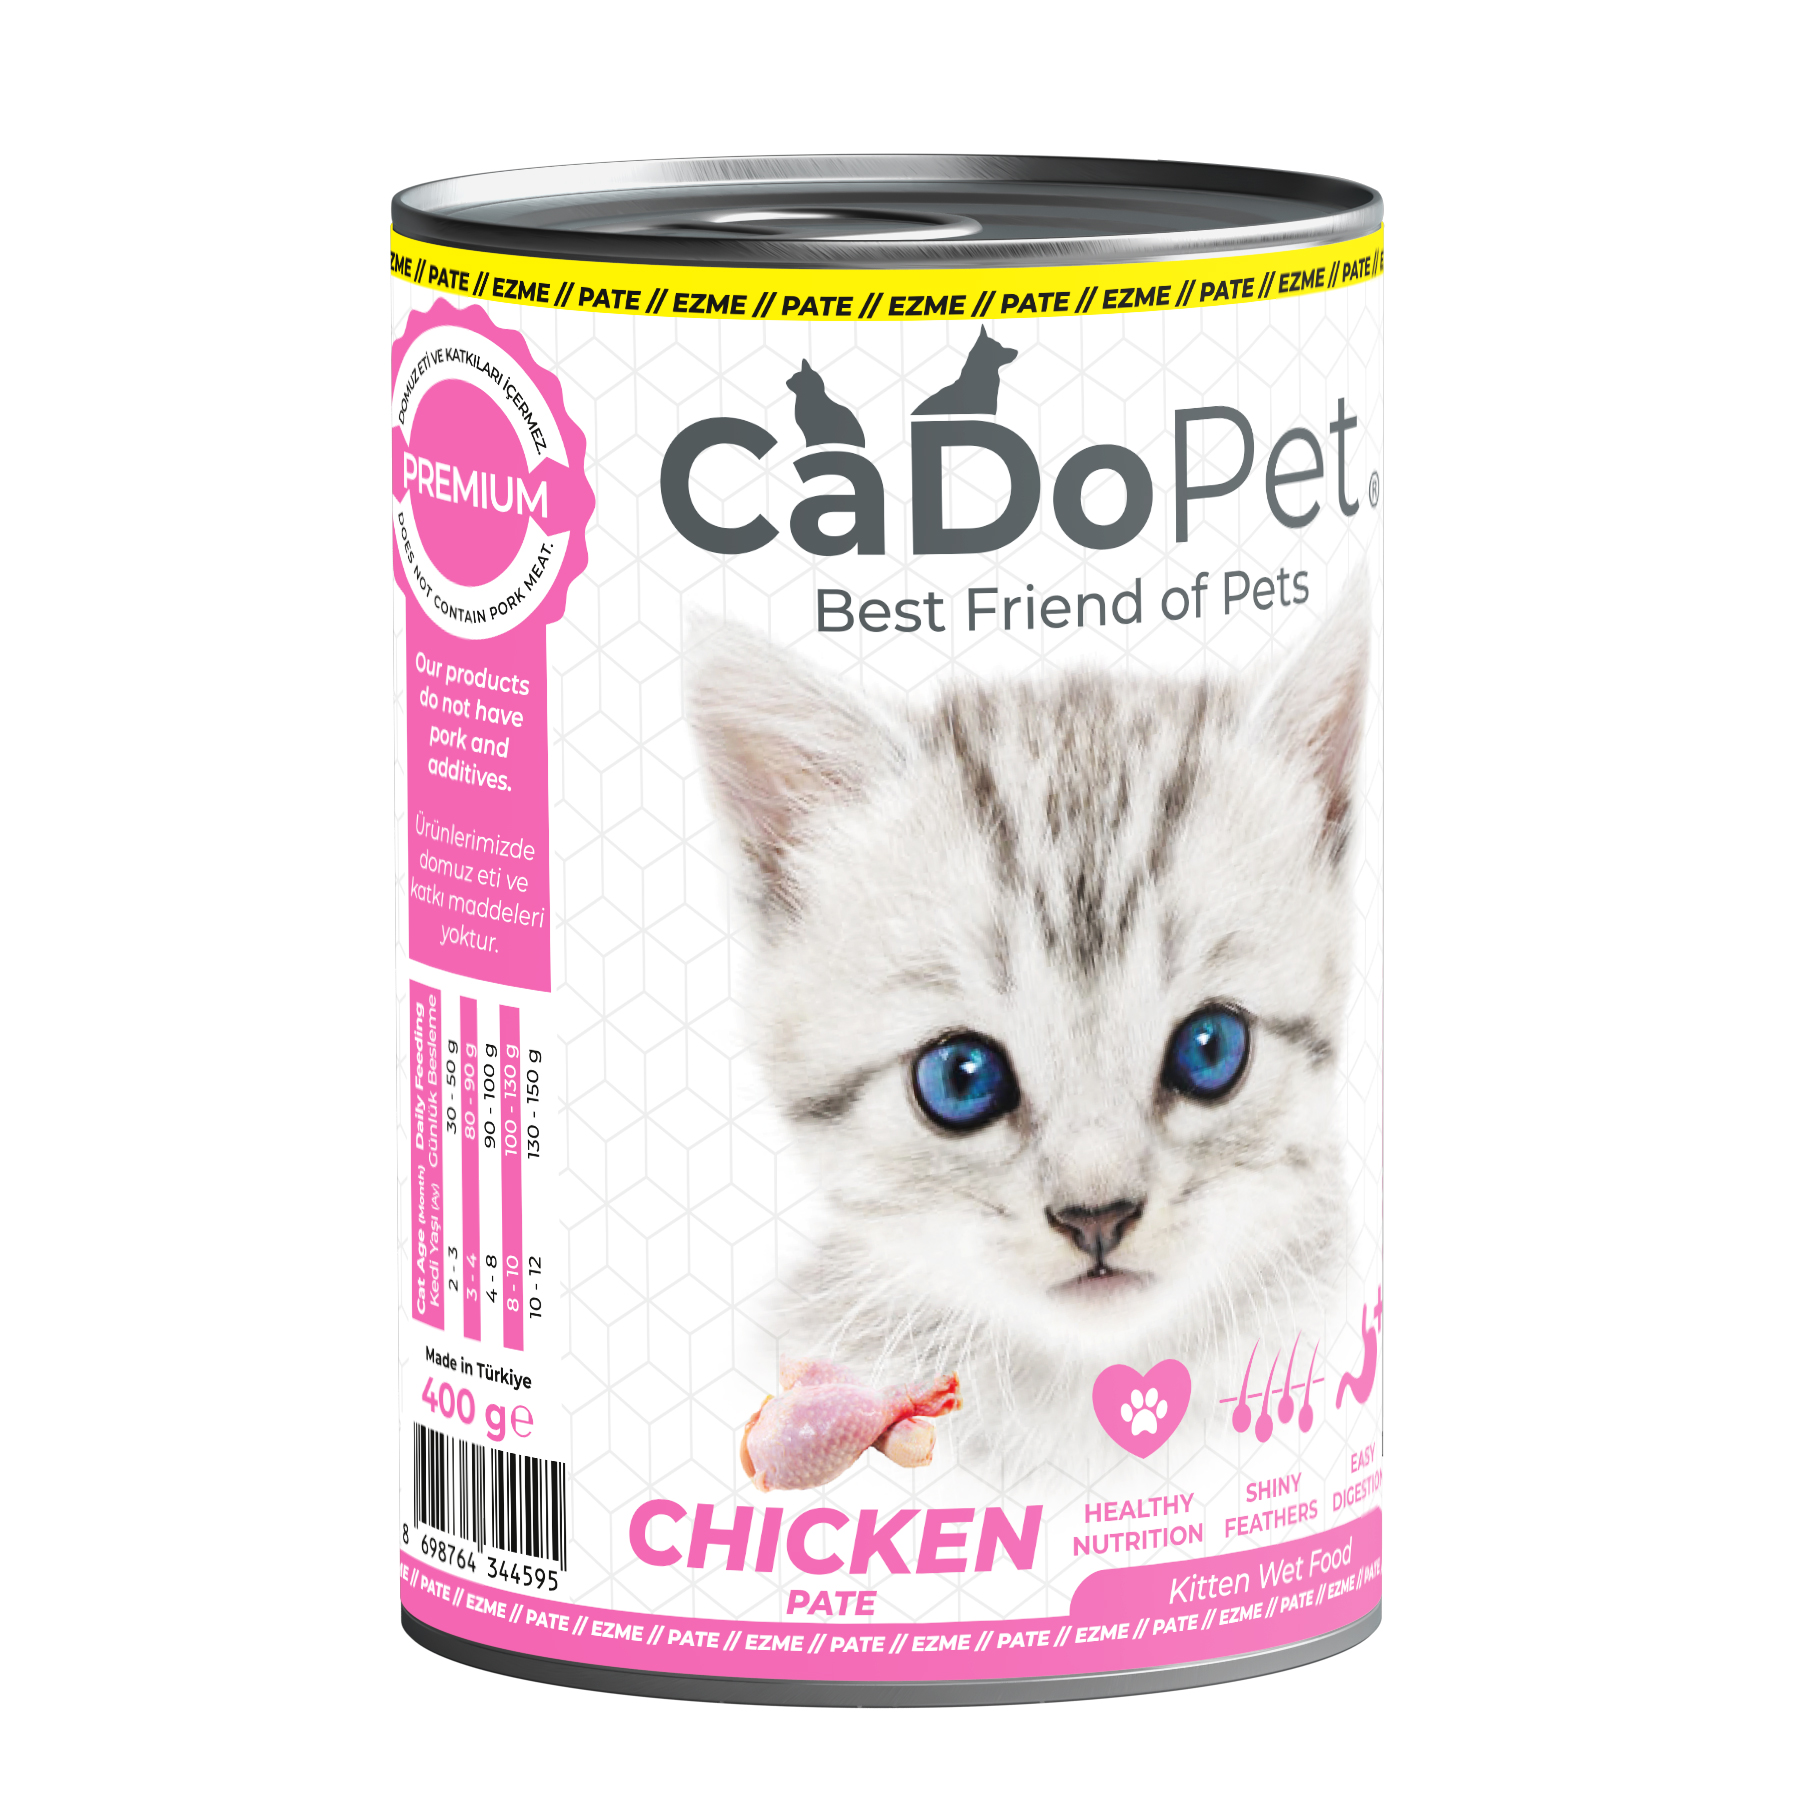 .Kitten Wet Food 400g with Chicken Pate.